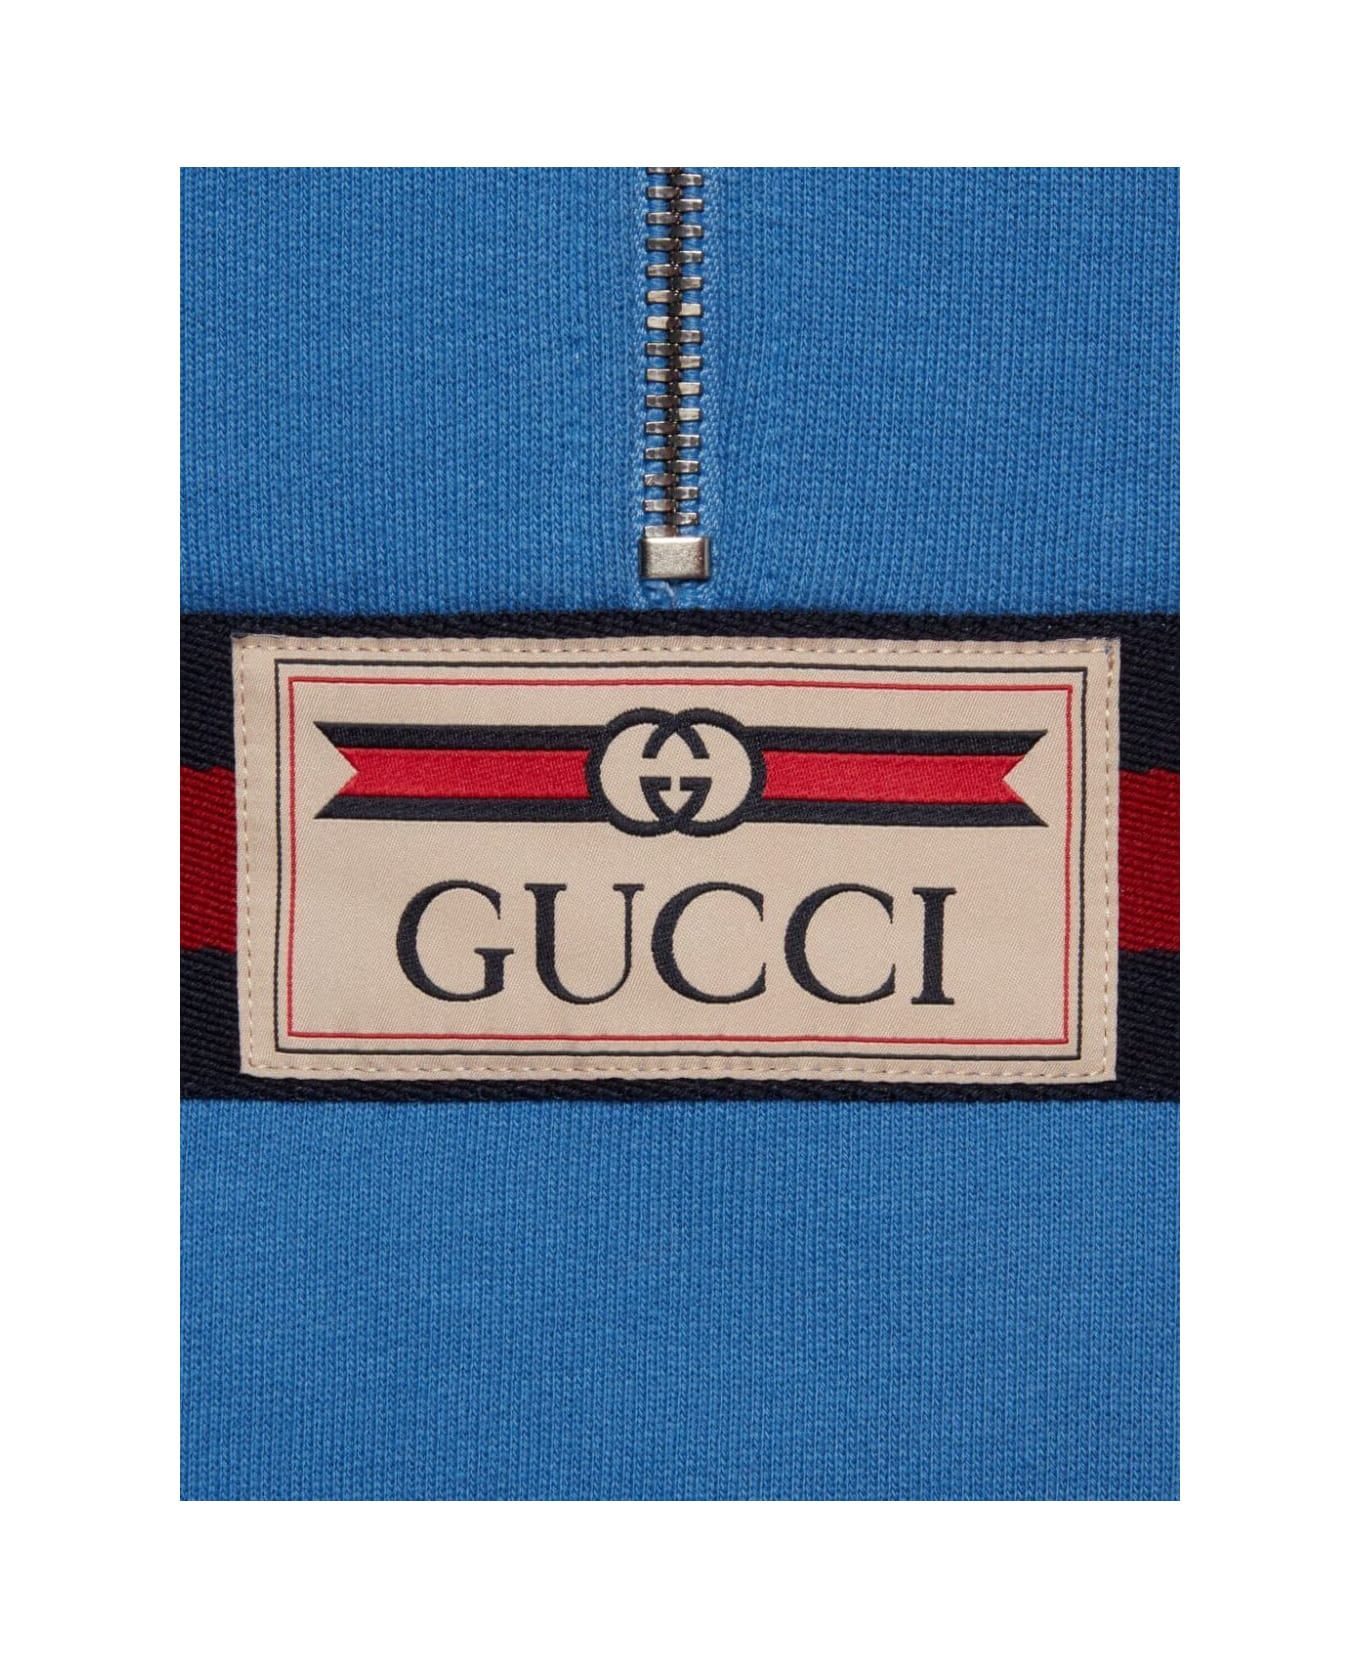 Gucci Jacket Felted Cotton Jersey - Avio Mix